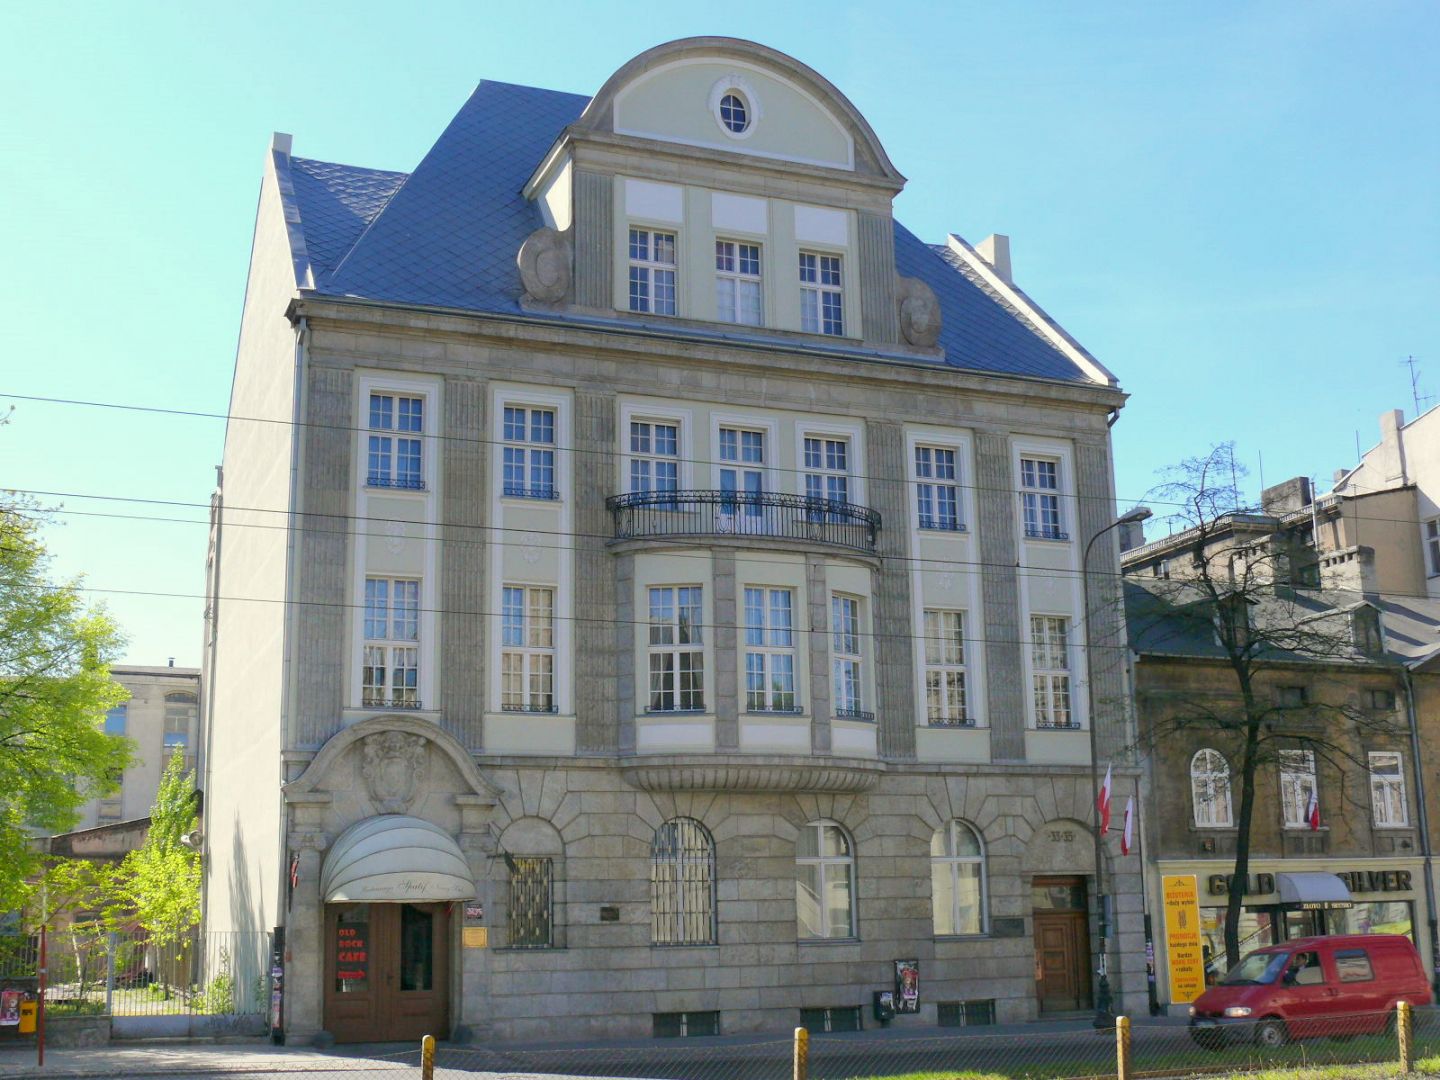 Wilhelm Lürkens Palace